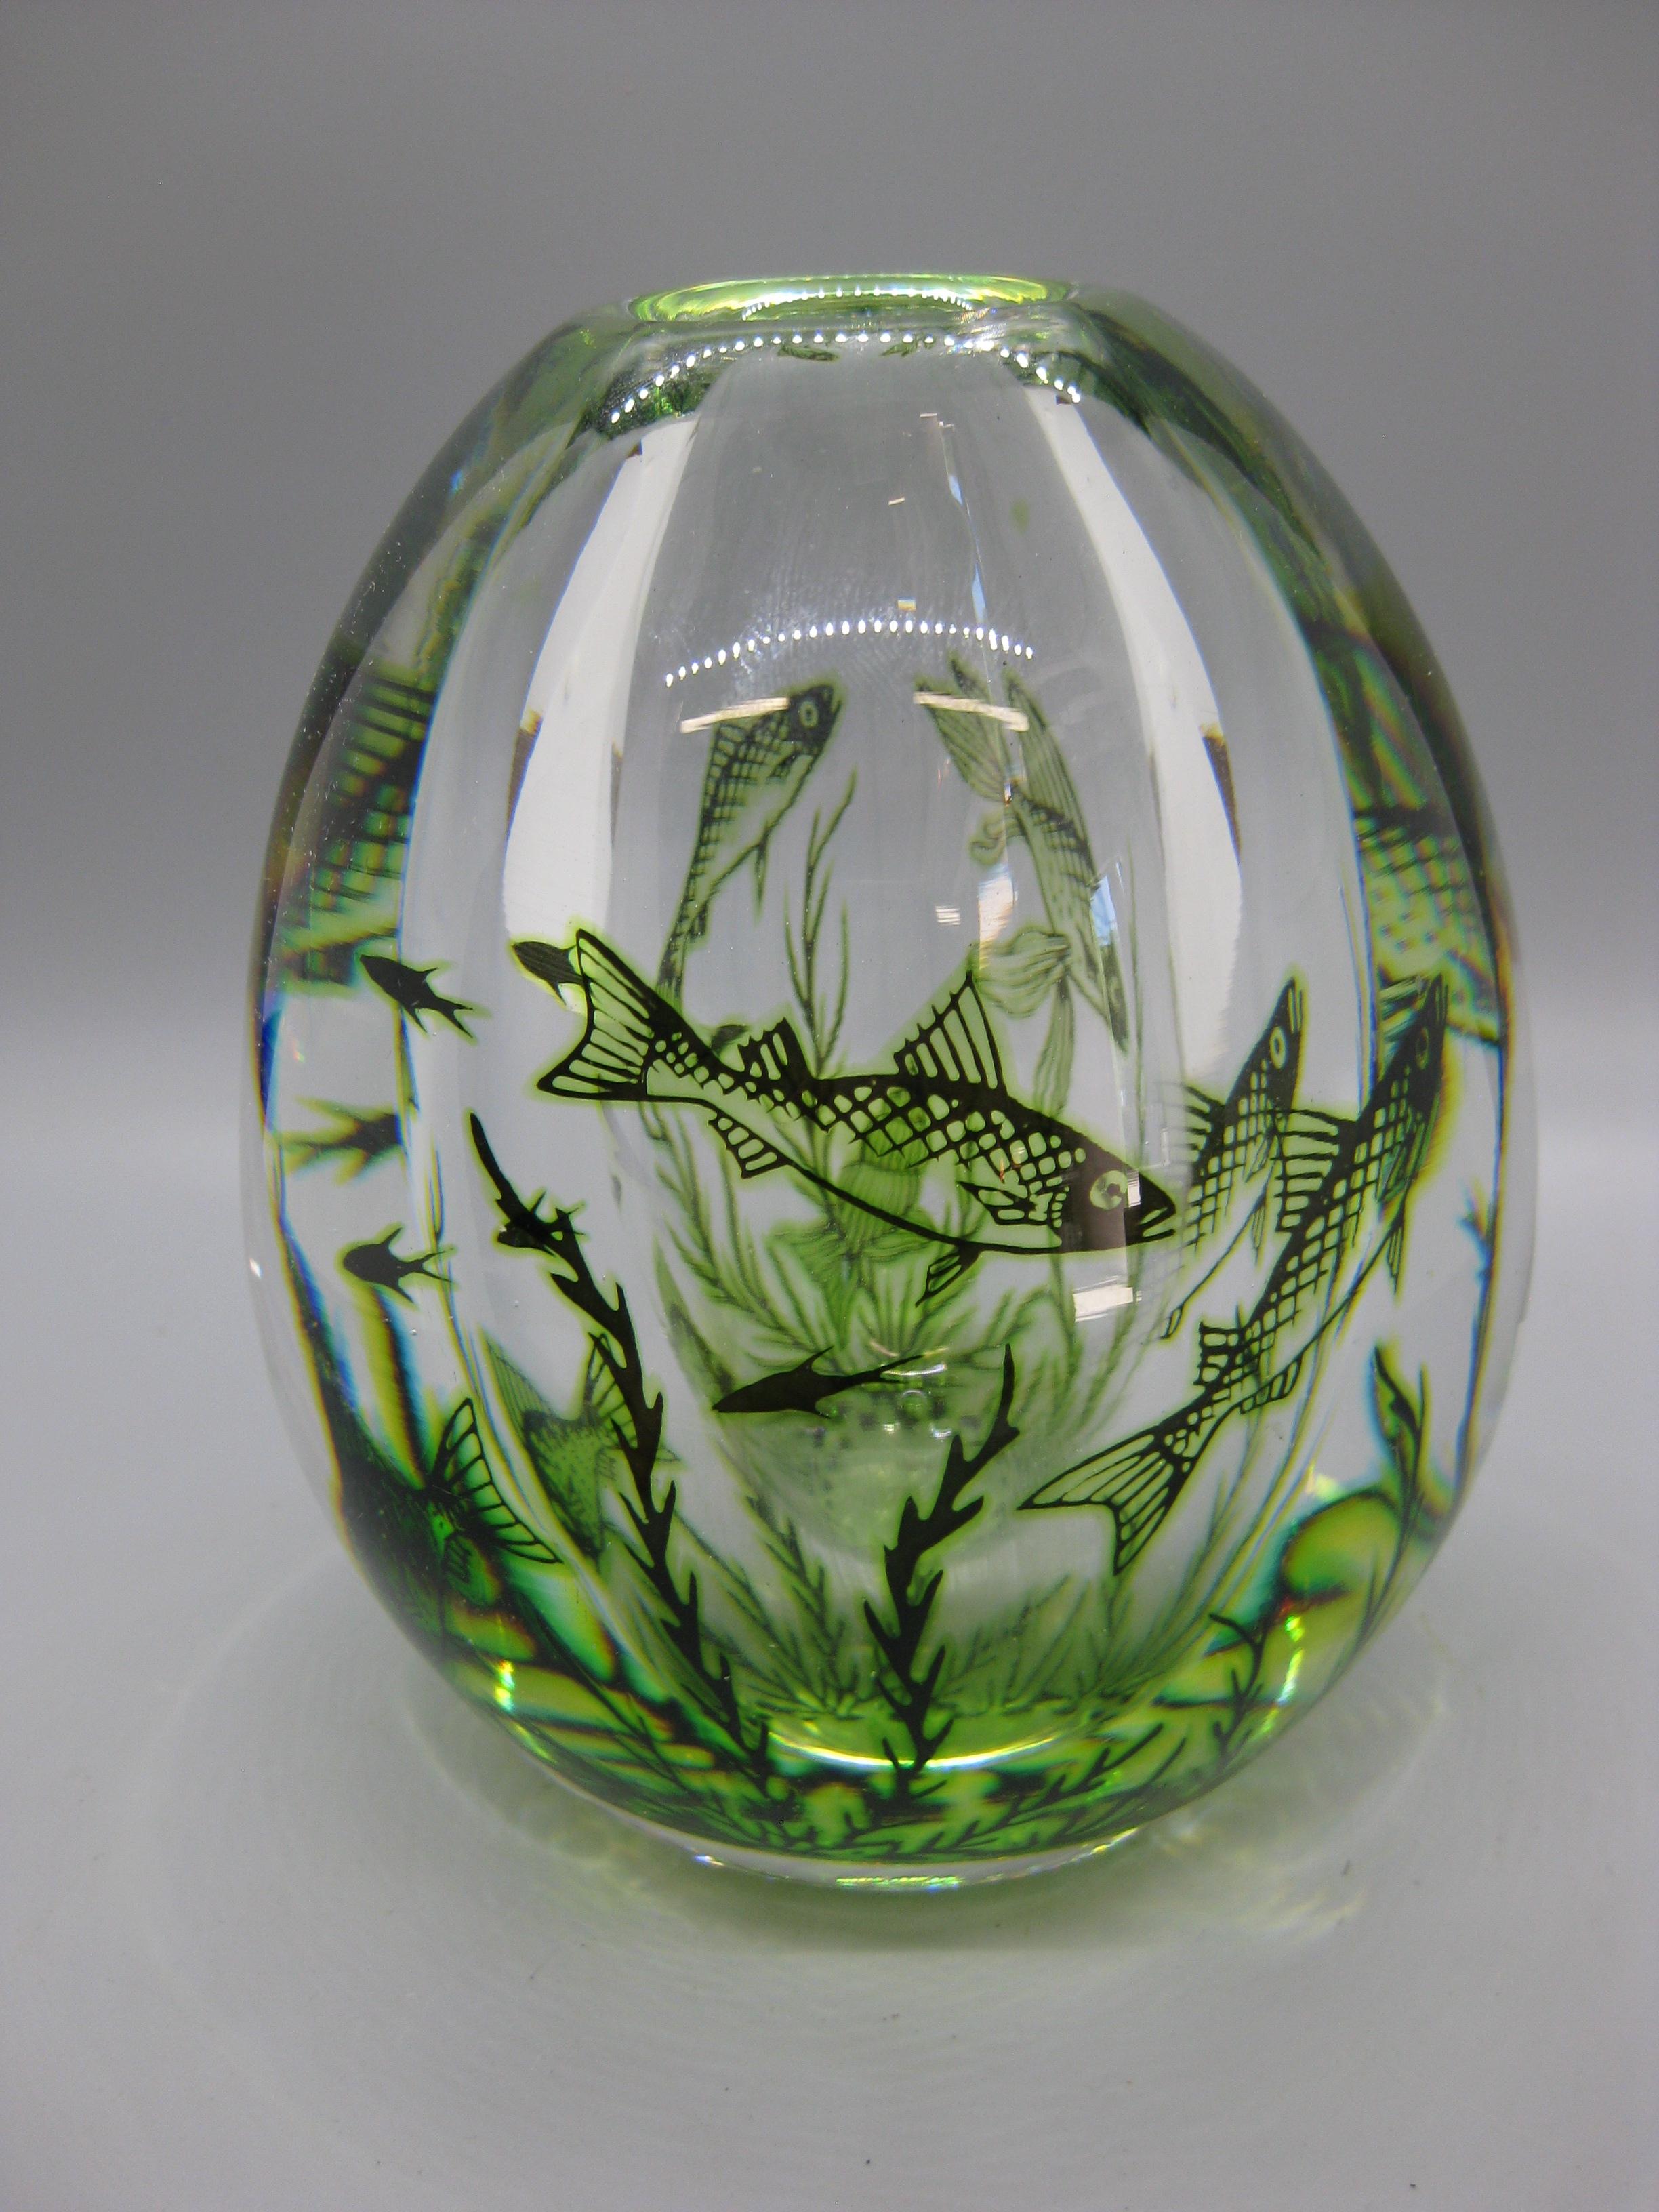 1940's Orrefors Edward Hald Graal Fish Art Glass Vase Sculpture Made in Sweden For Sale 2